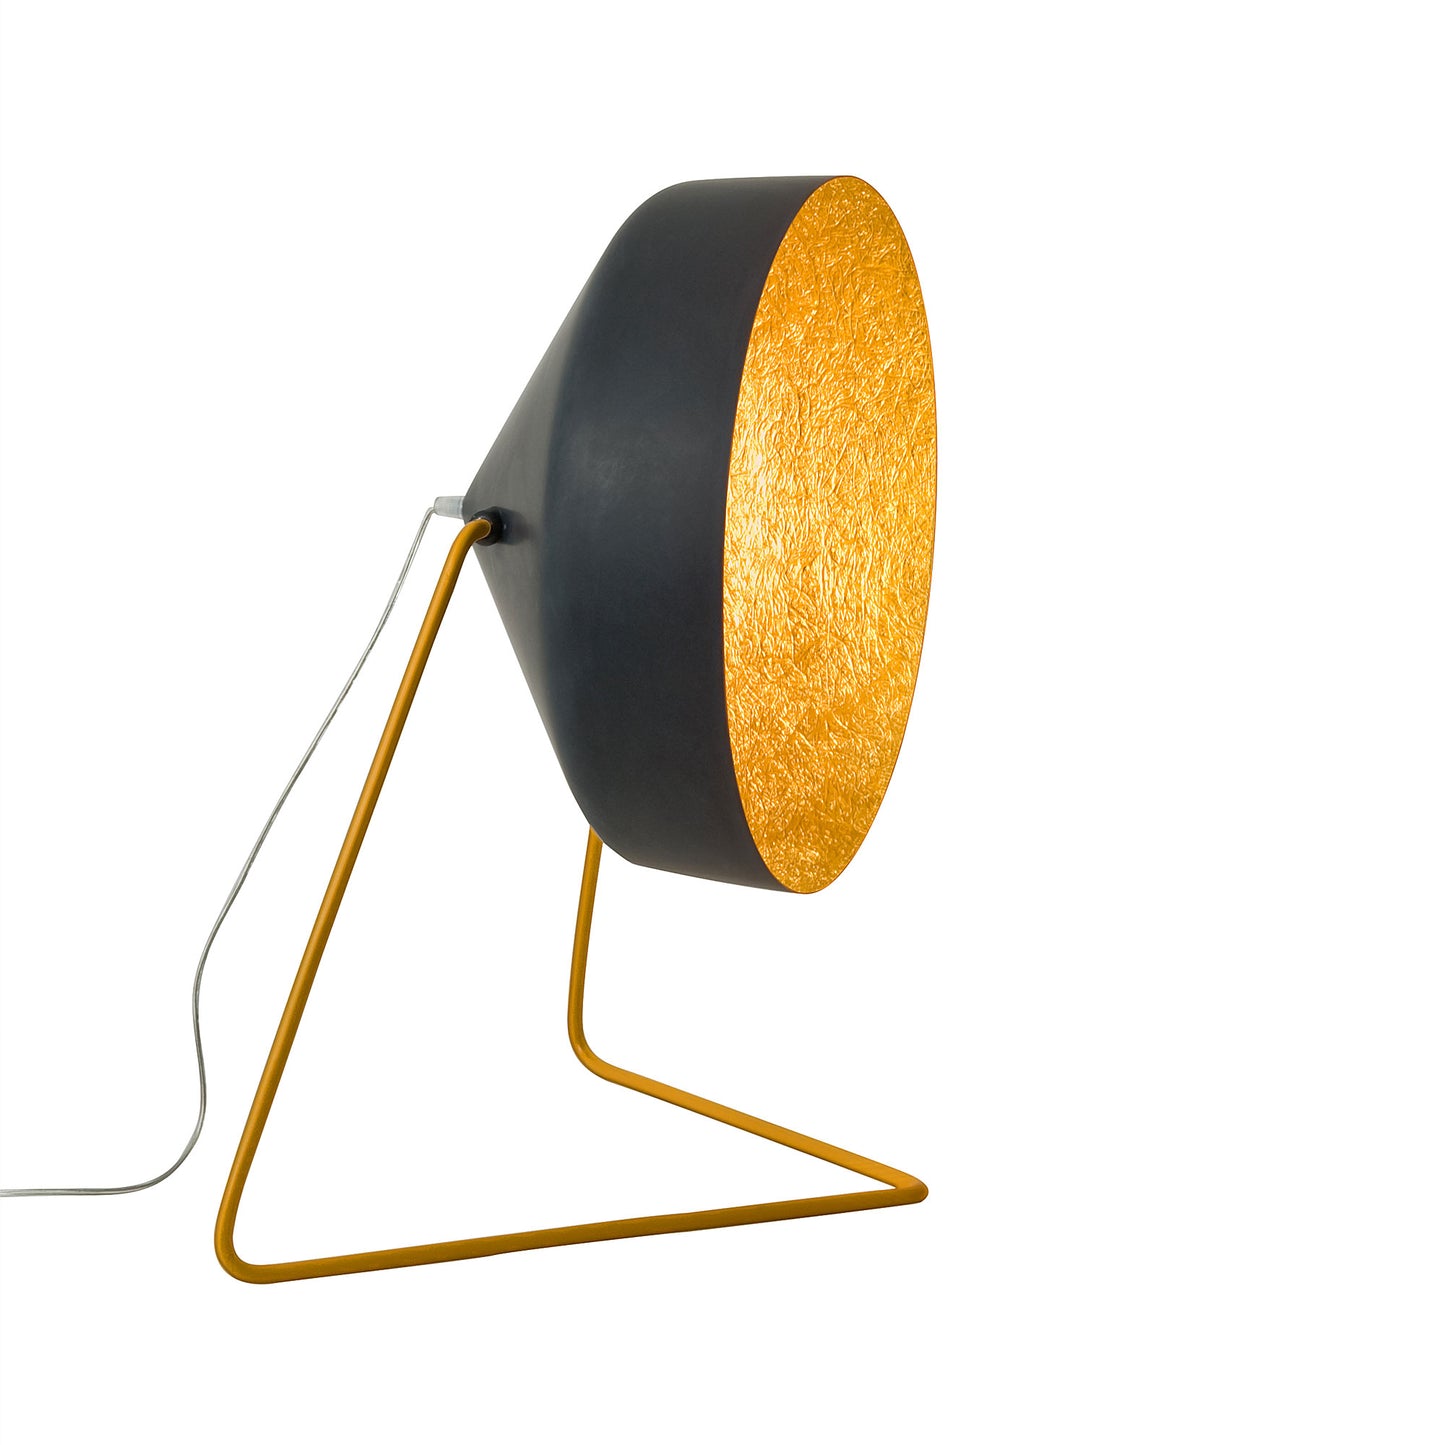 In-es.artdesign Cyrus F Lavagna Floor Lamp